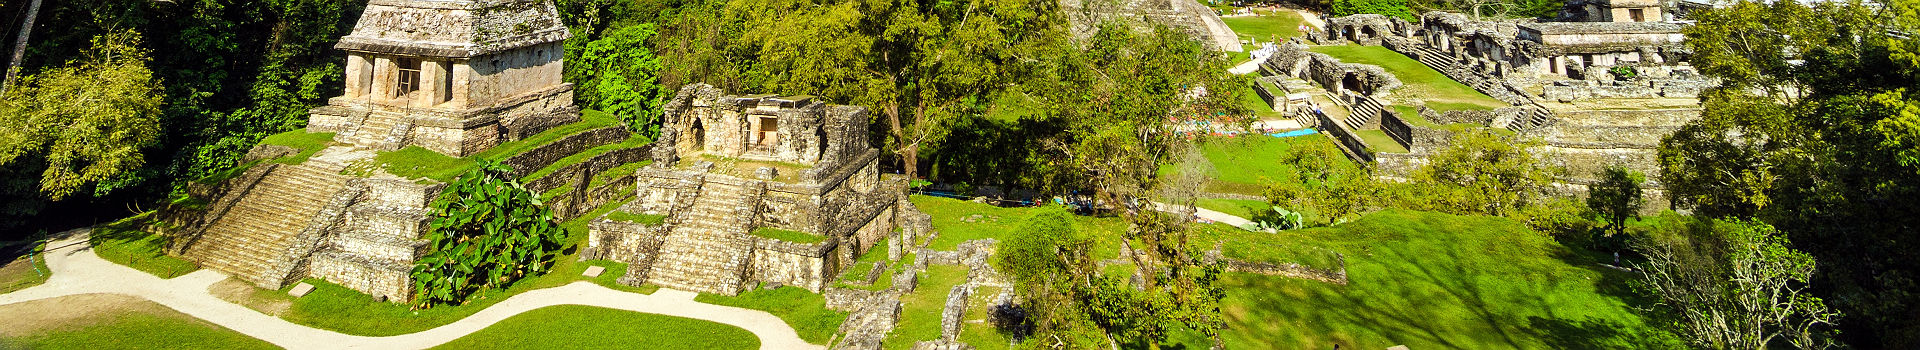 Vue d'ensemble du site de Palenque avec le palais et des temples au Mexique